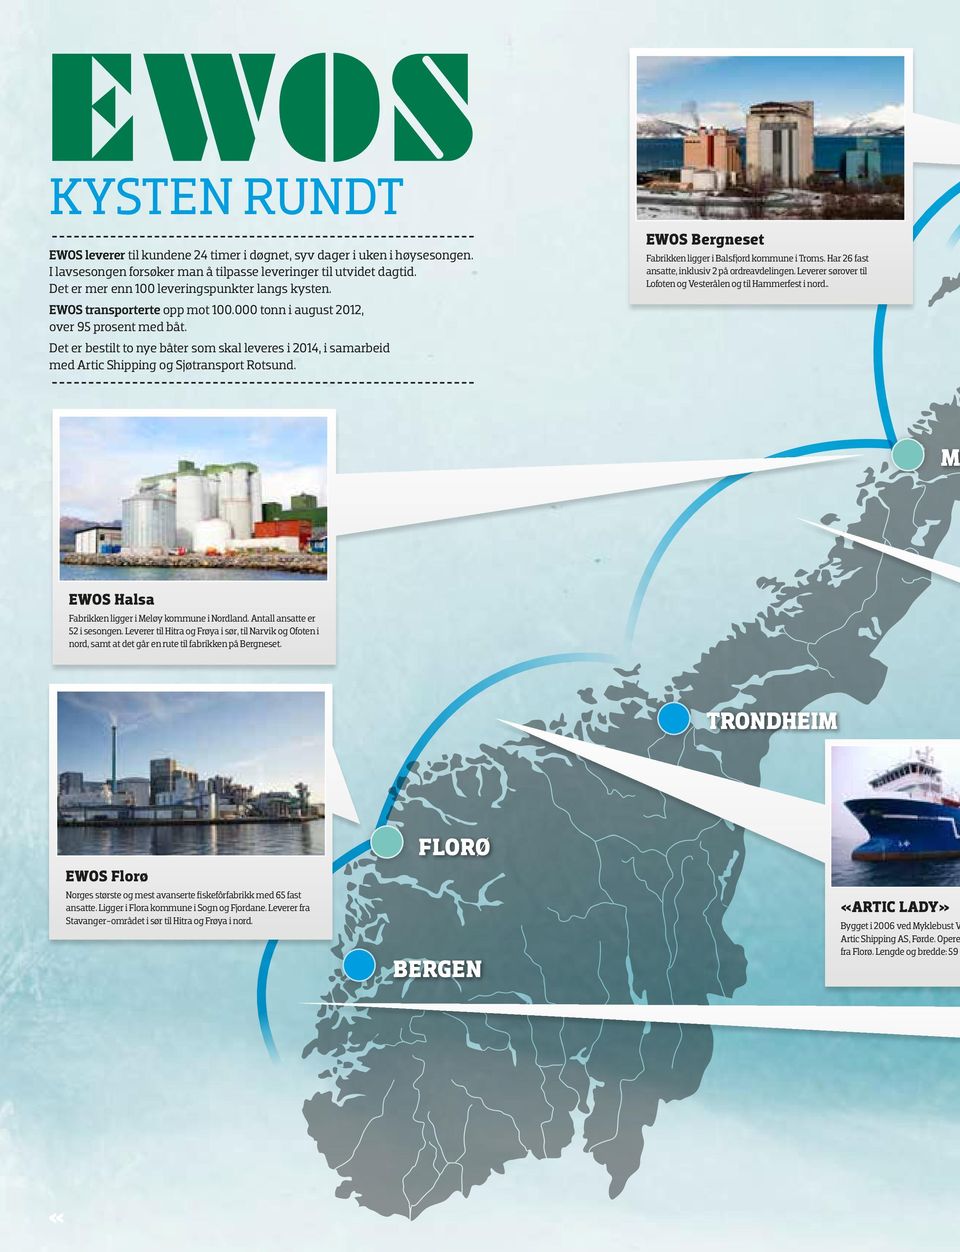 Det er bestilt to nye båter som skal leveres i 2014, i samarbeid med Artic Shipping og Sjøtransport Rotsund. EWOS Bergneset Fabrikken ligger i Balsfjord kommune i Troms.